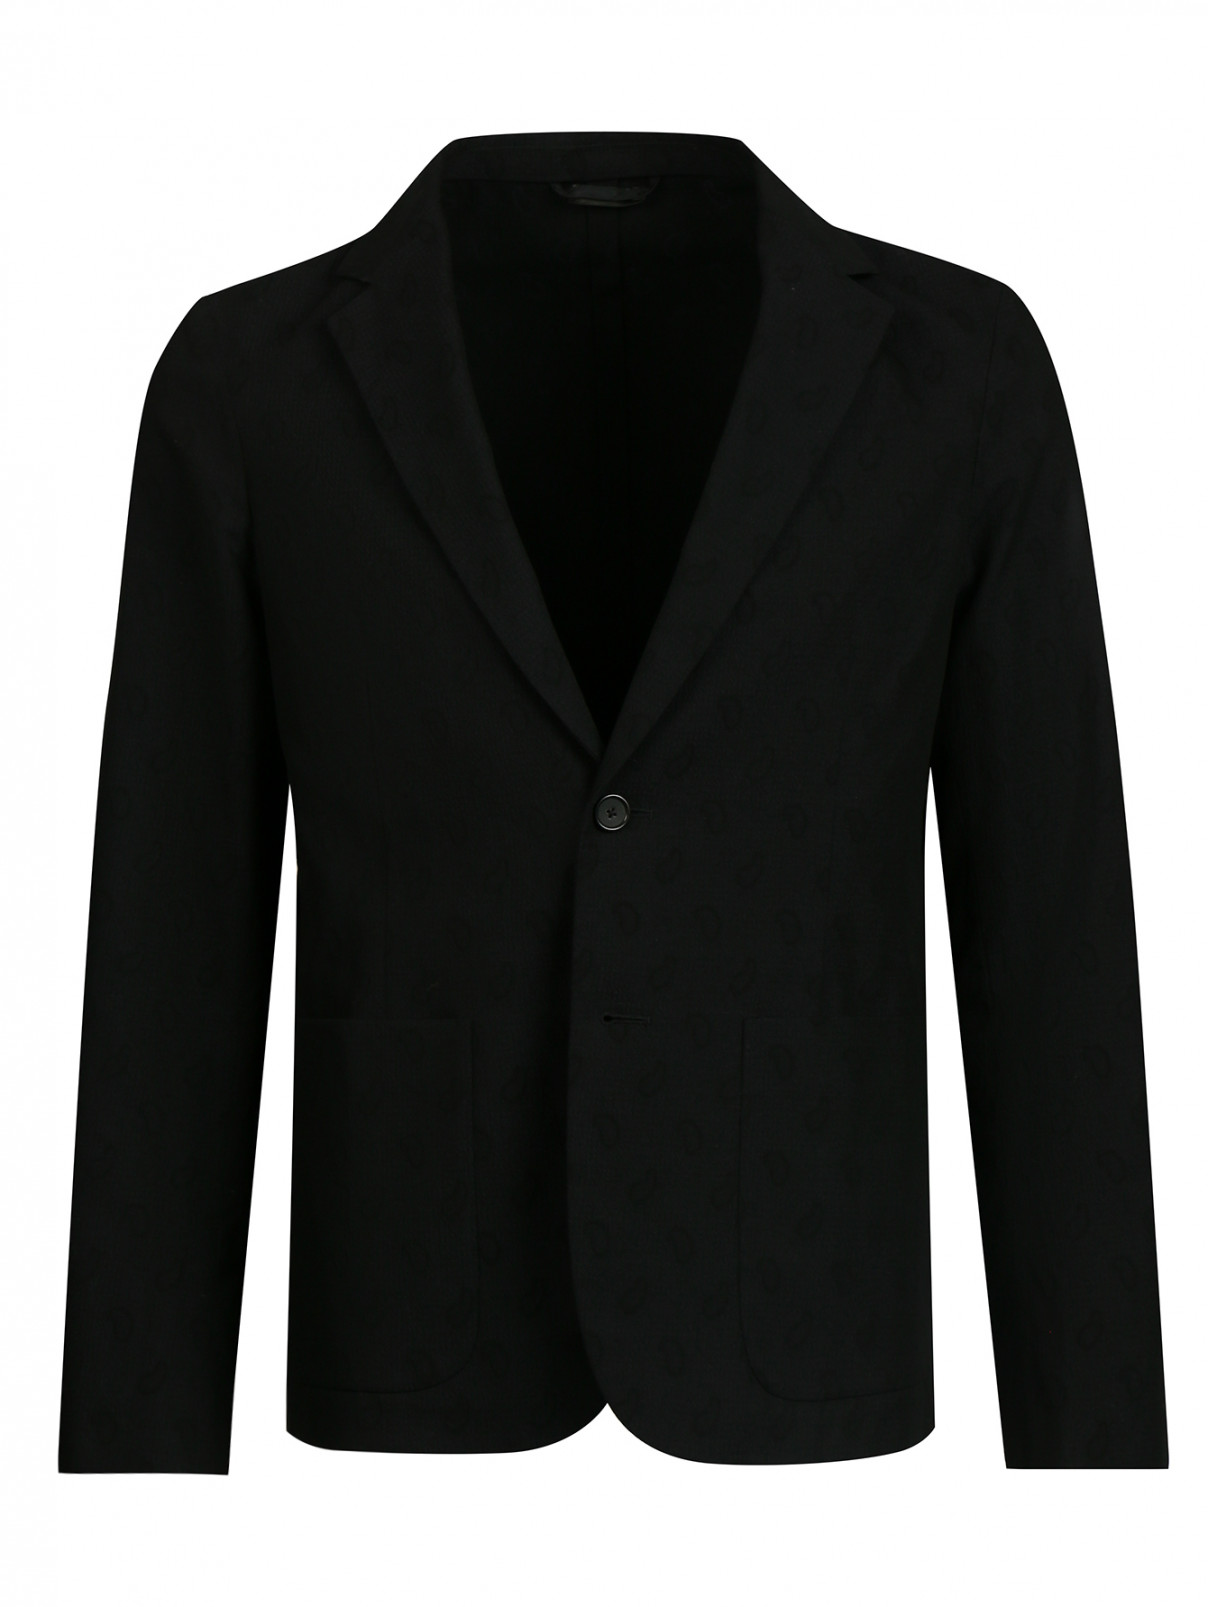 Пиджак однобортный из хлопка Jil Sander  –  Общий вид  – Цвет:  Черный